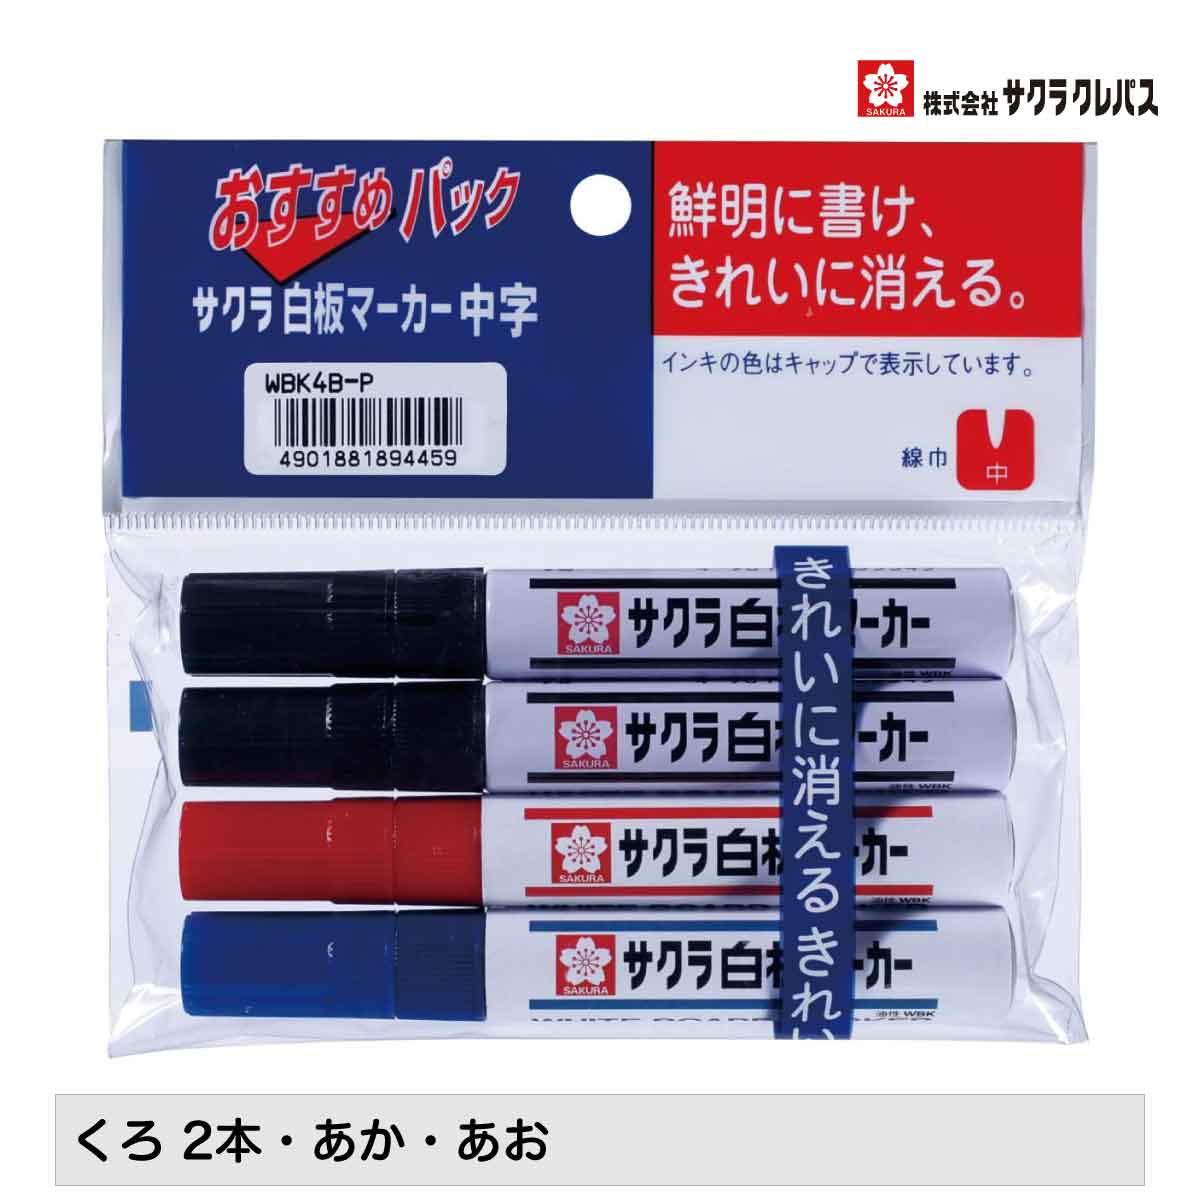 サクラクレパス 白板マーカー 3色セット 黒2本 赤 青 中字 WBK4B-P インク補充可能 ホワイトボードマーカー Refillable Marker Pen - whiteboard marker